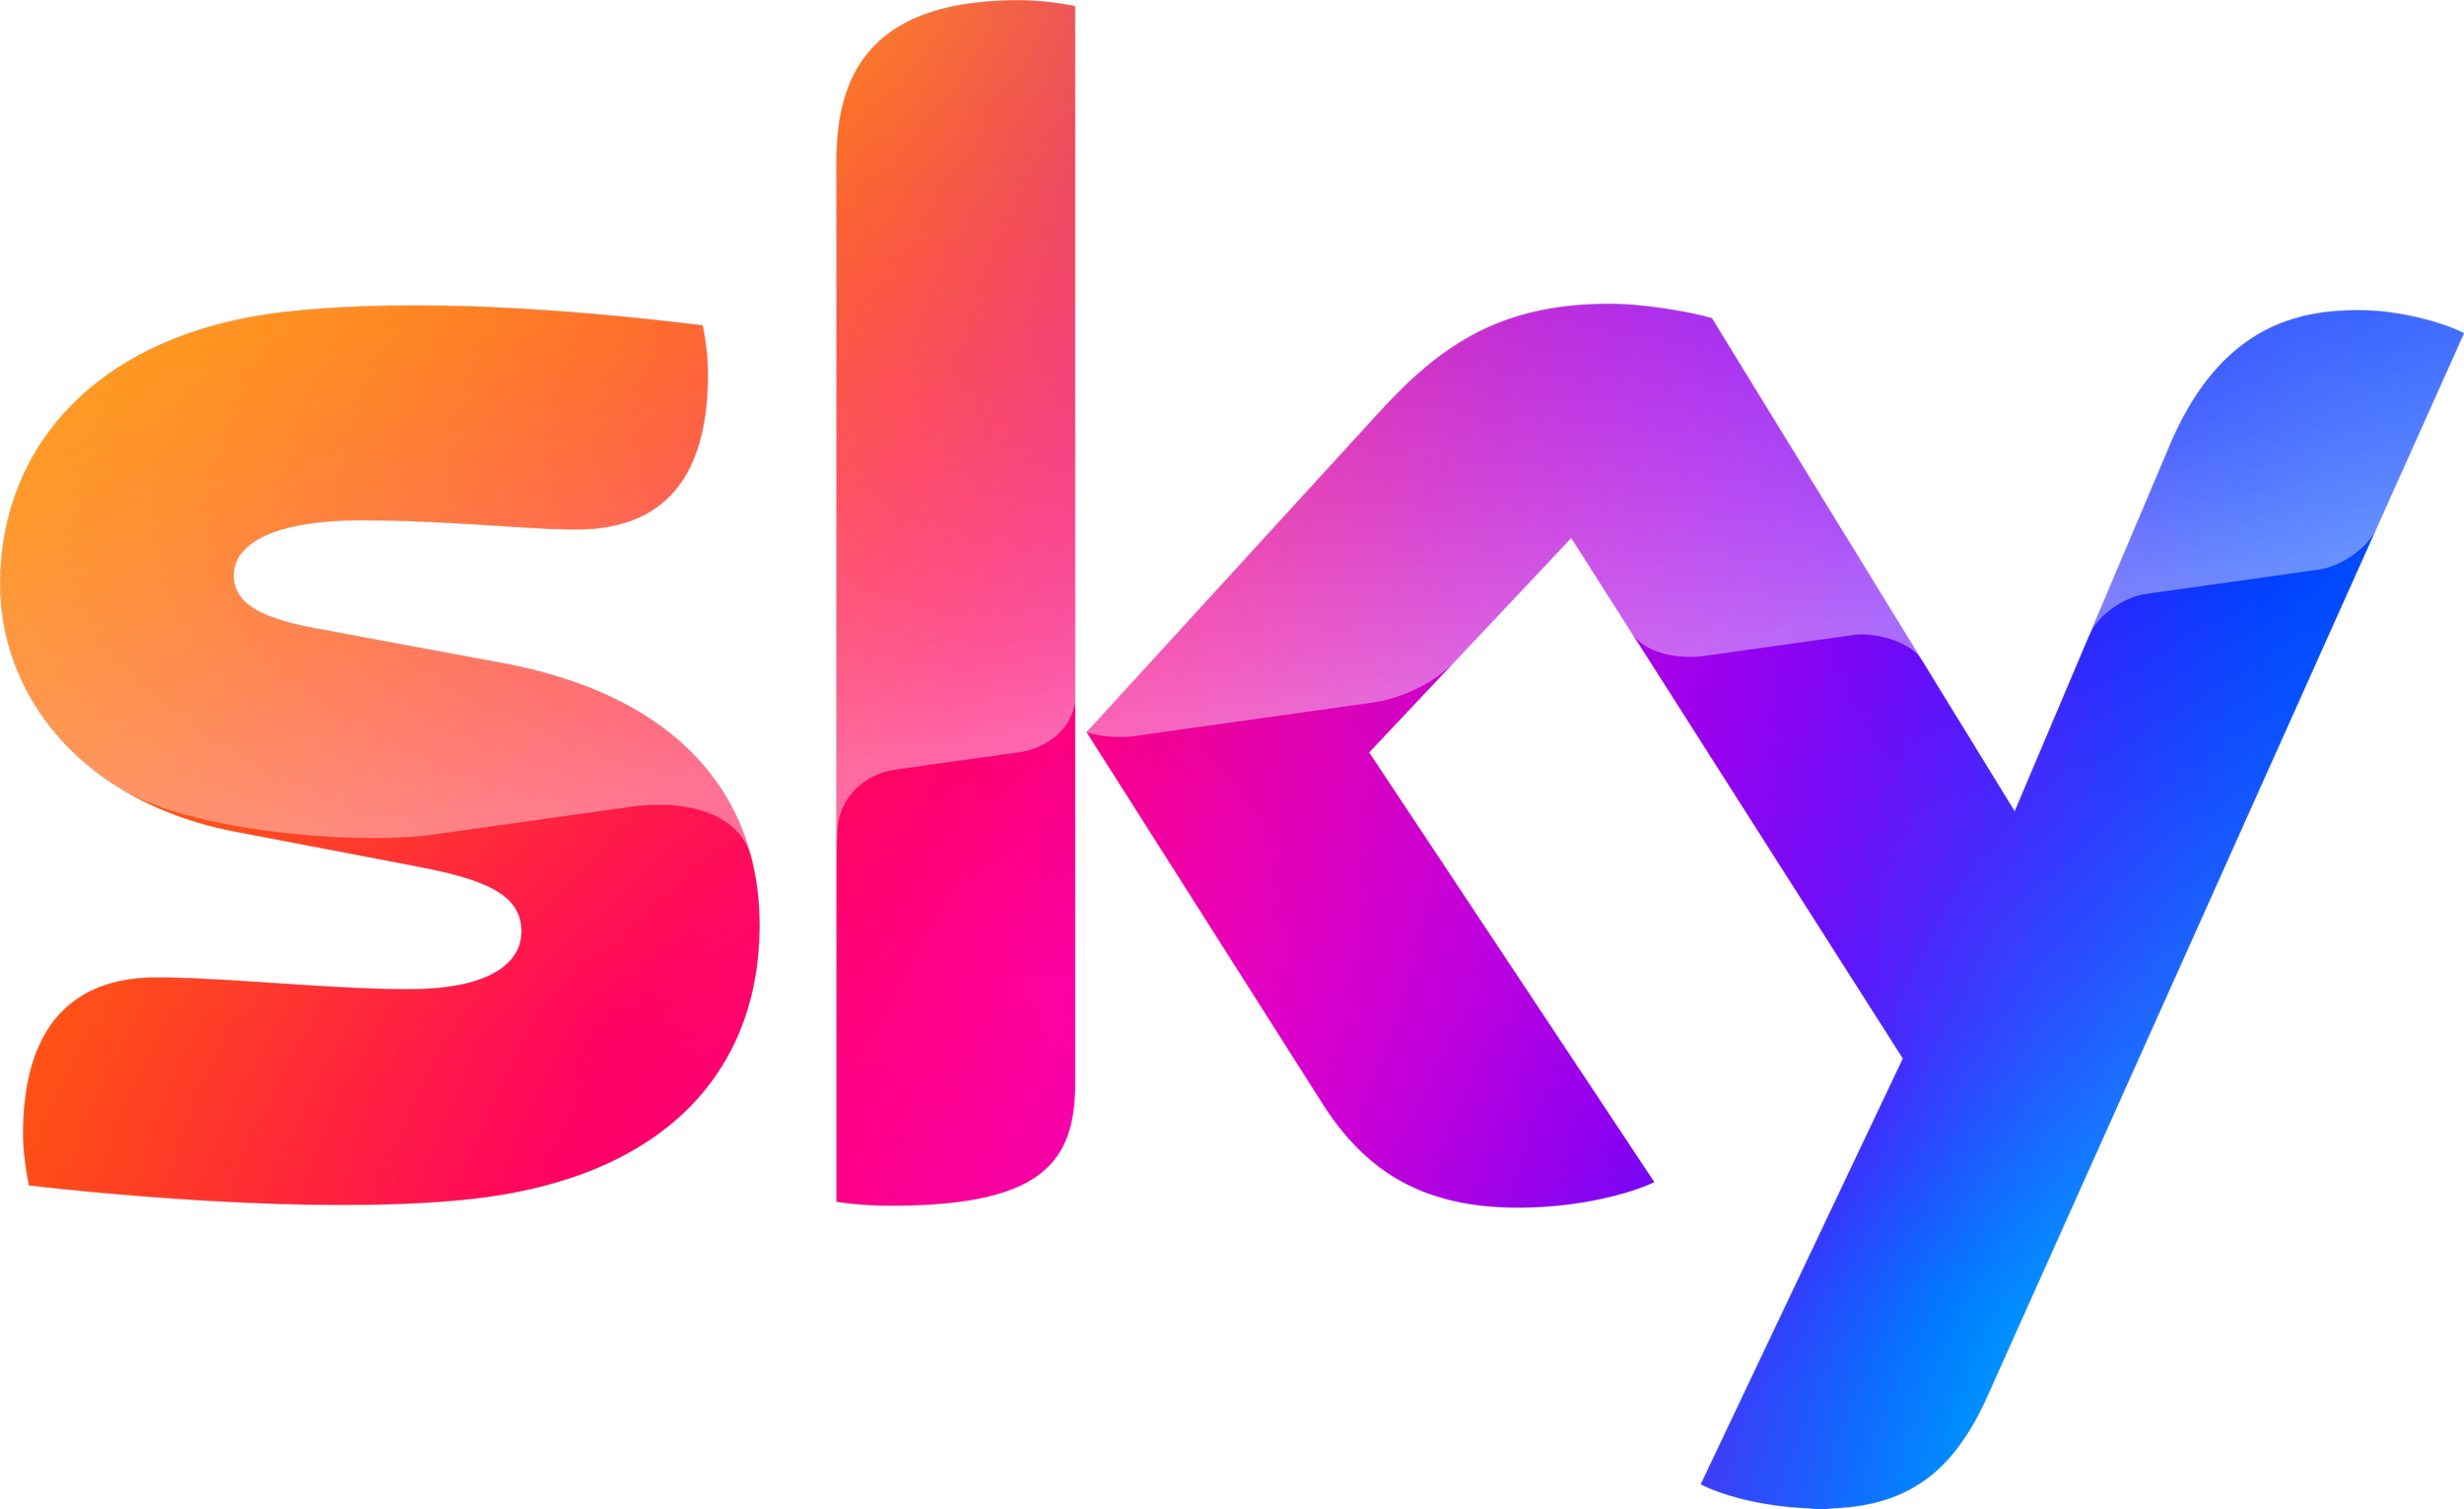 Sky_Master_Brand_Logo_LARGE_RGB.png